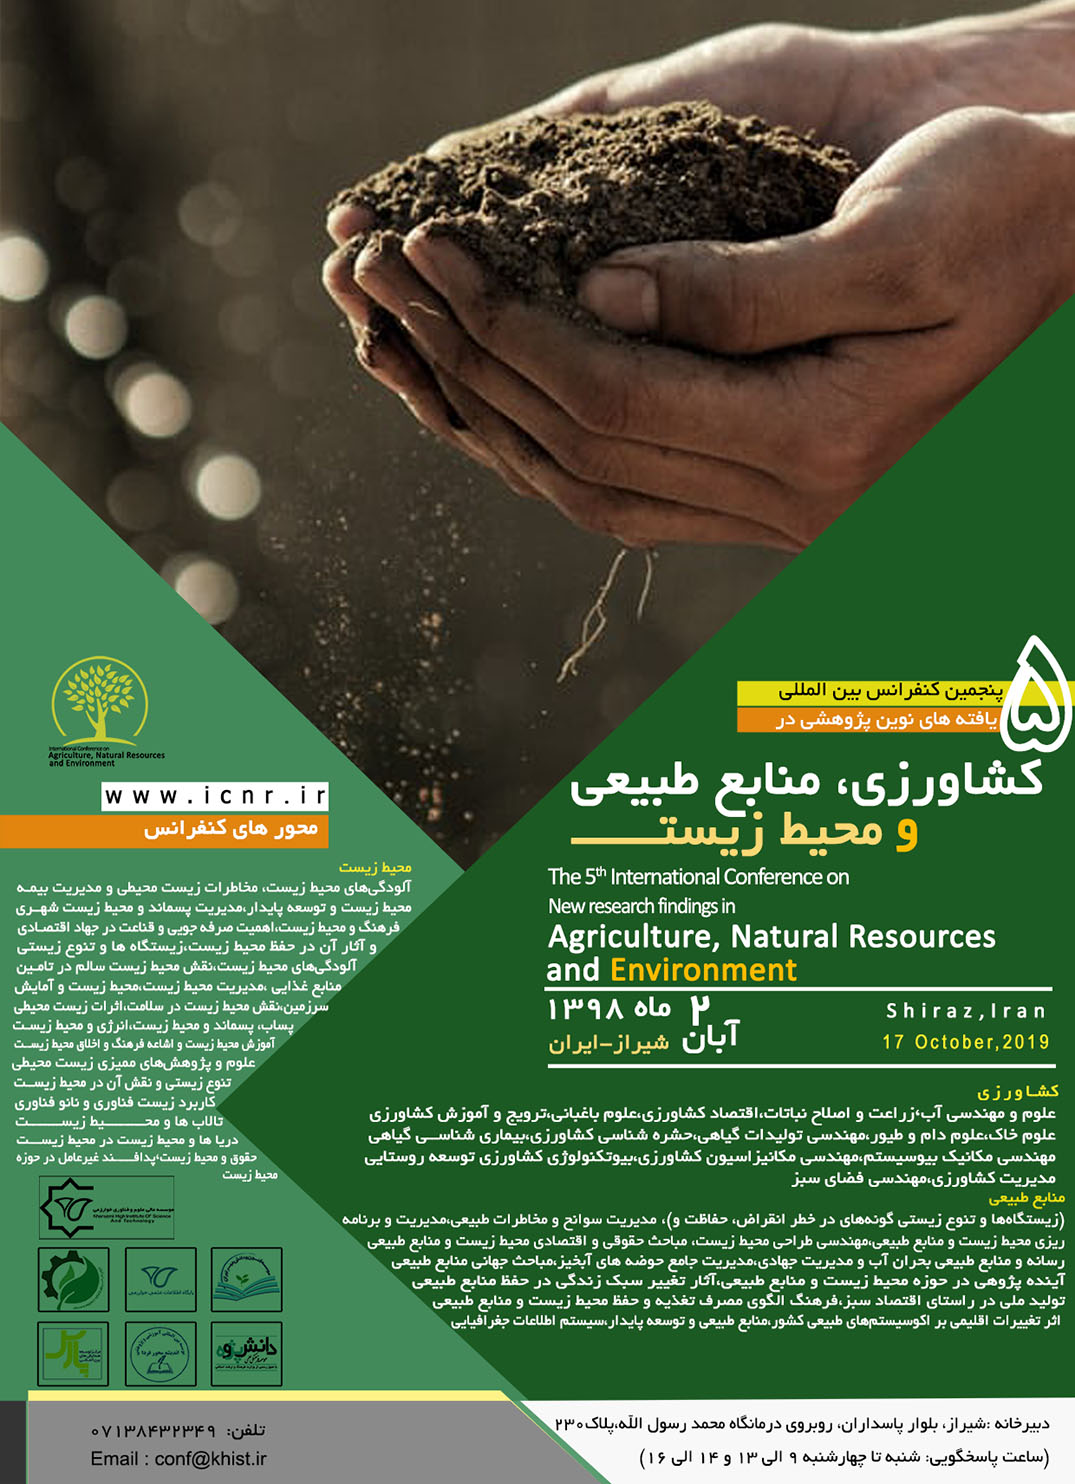 پوستر کنفرانس بین المللی یافته های نوین پژوهشی در کشاورزی، منابع طبیعی و محیط زیست